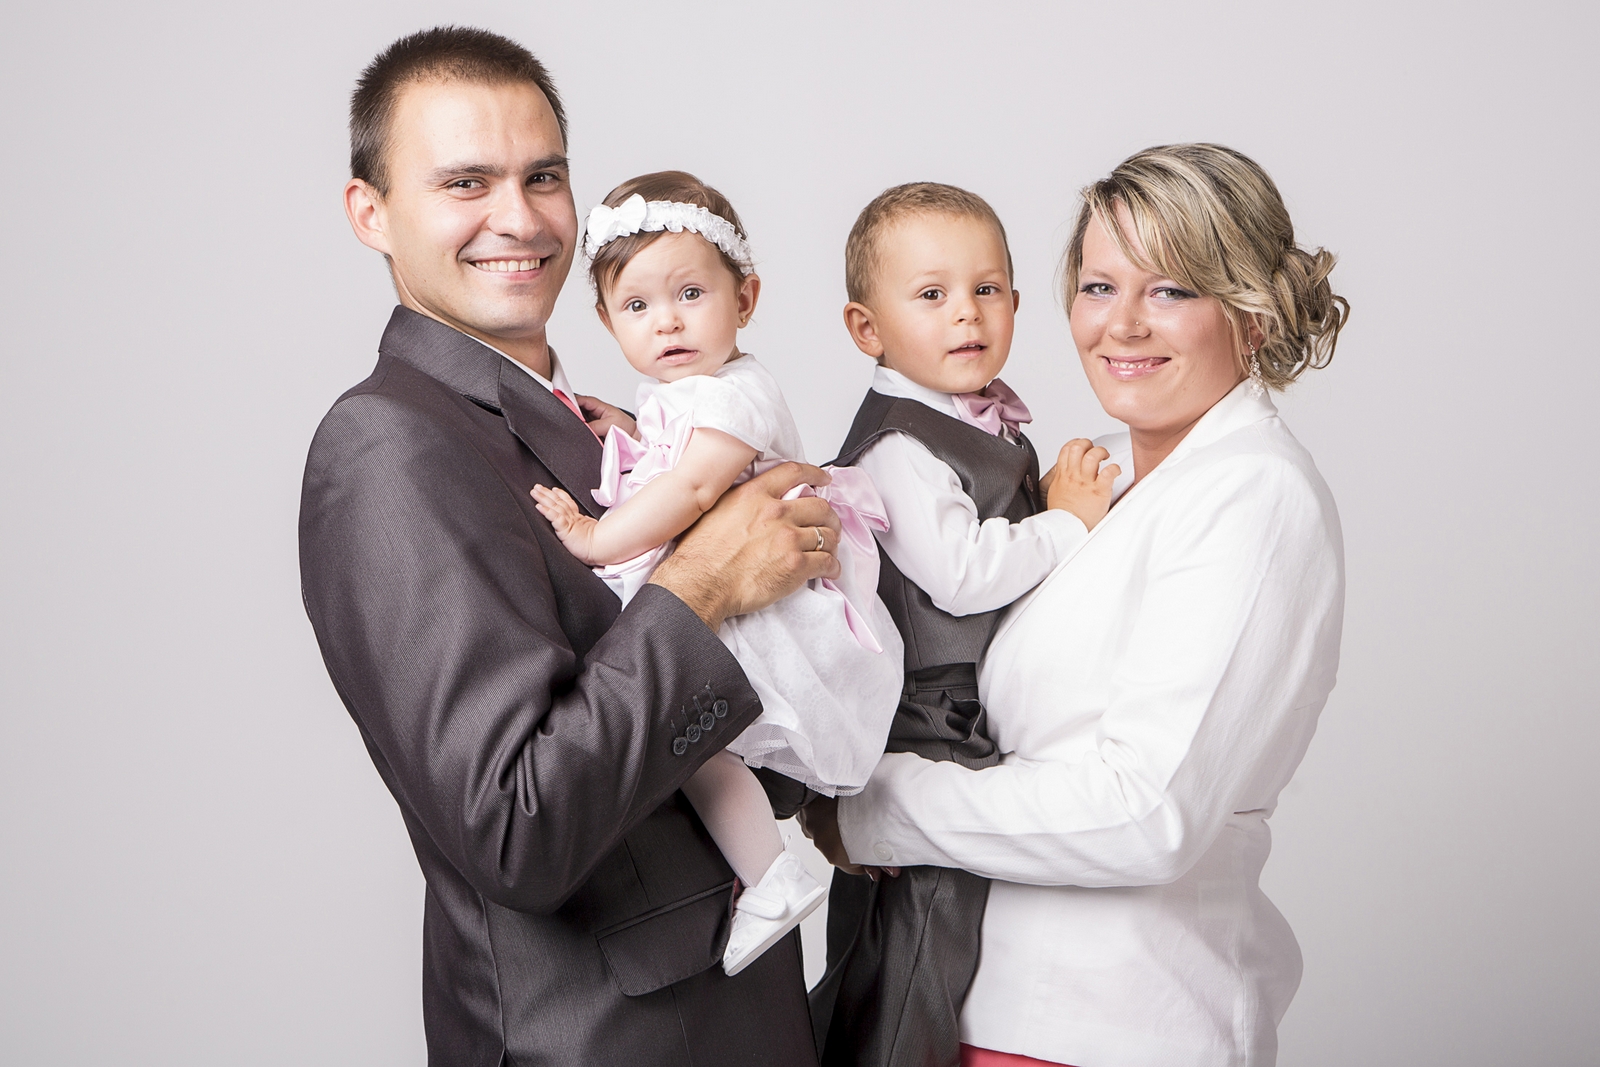 W warszawie zrobiono zdjęcie chrztu dziecka wraz z fotografią rodzinną w kościele